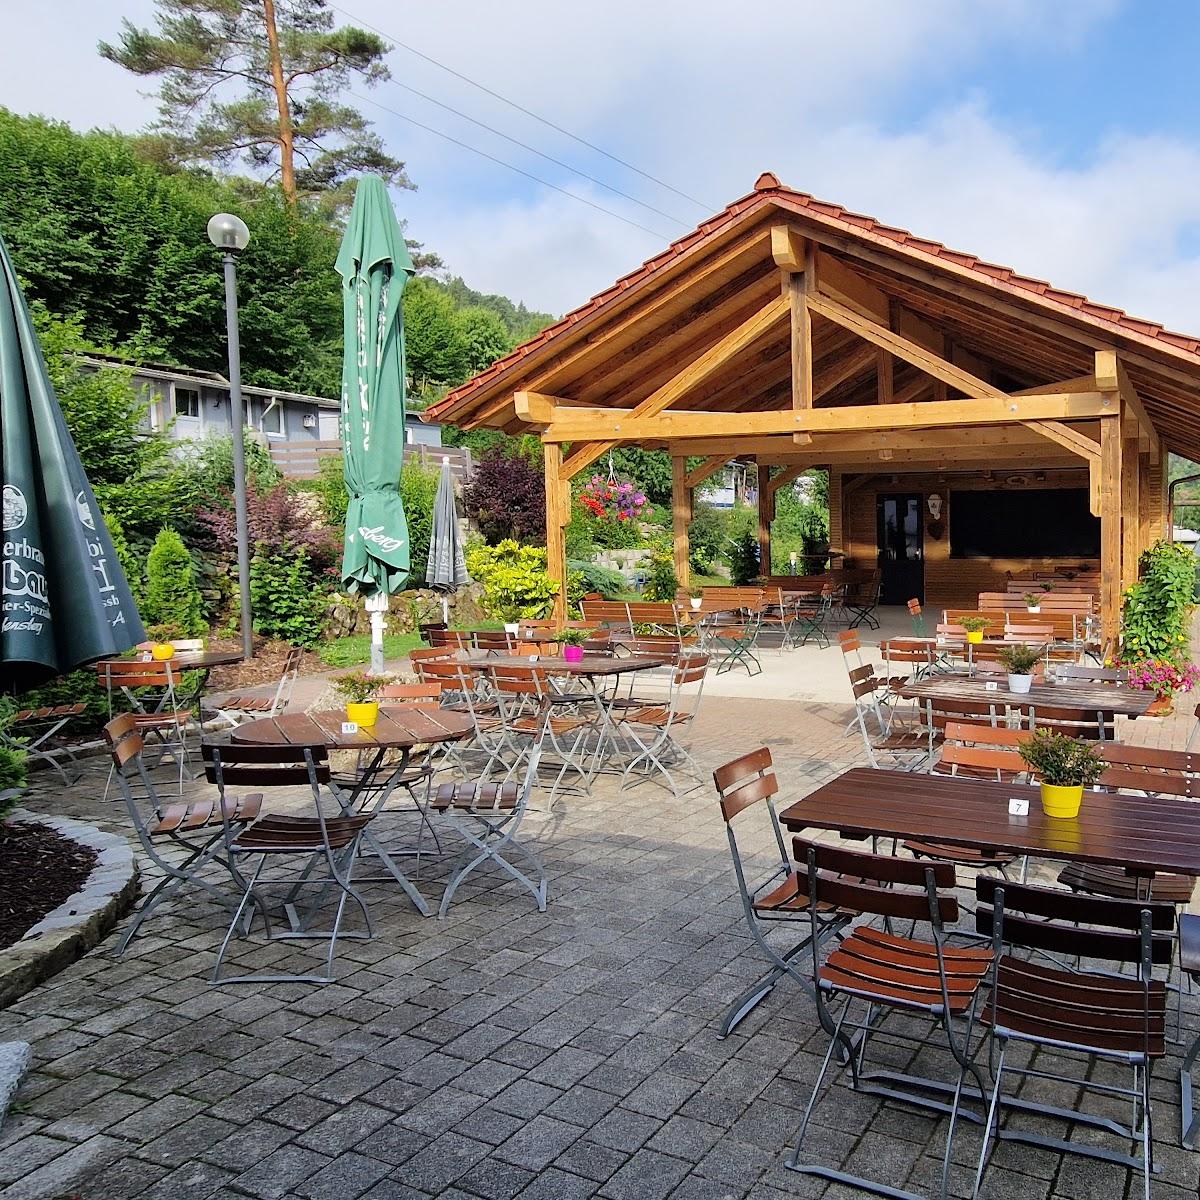 Restaurant "Landgasthof Hartlmühle,gemütlichen Biergarten und Pool" in Laaber